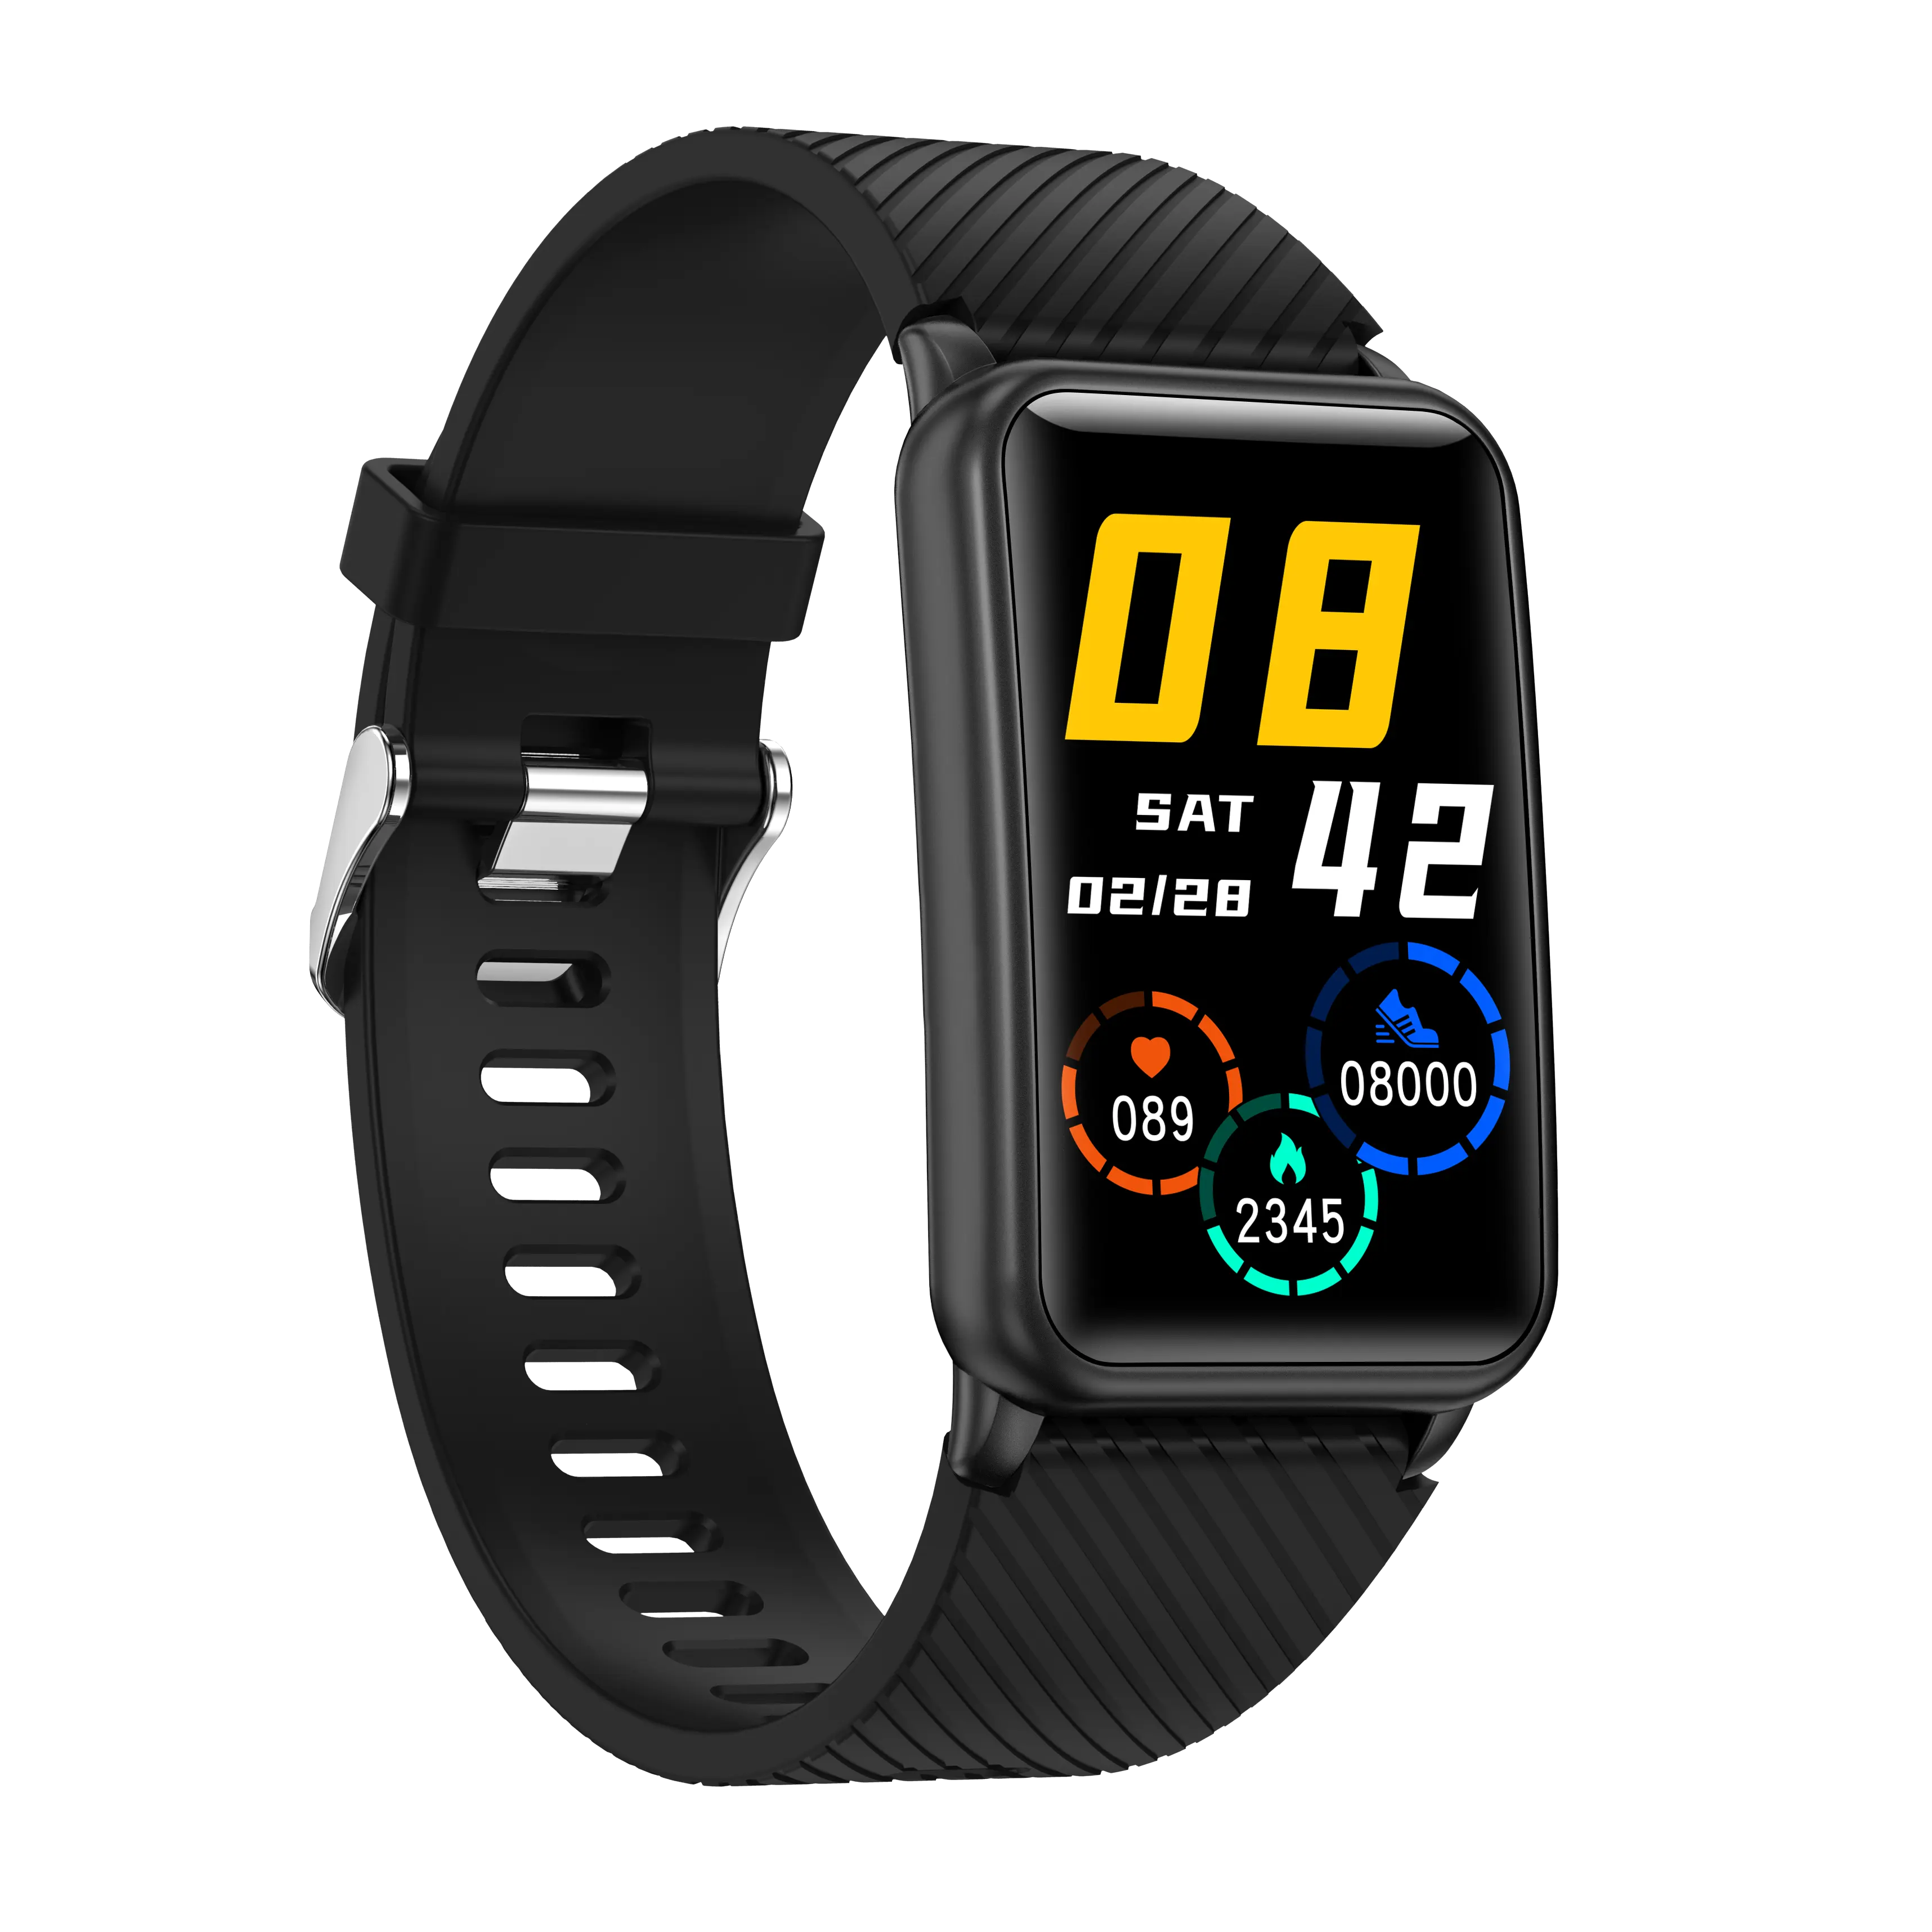 Çok sıcak satış Reloj Bt çağrı Smartwatch H96 mesaj hatırlatma su geçirmez müzik çalar spor izci akıllı saat telefon